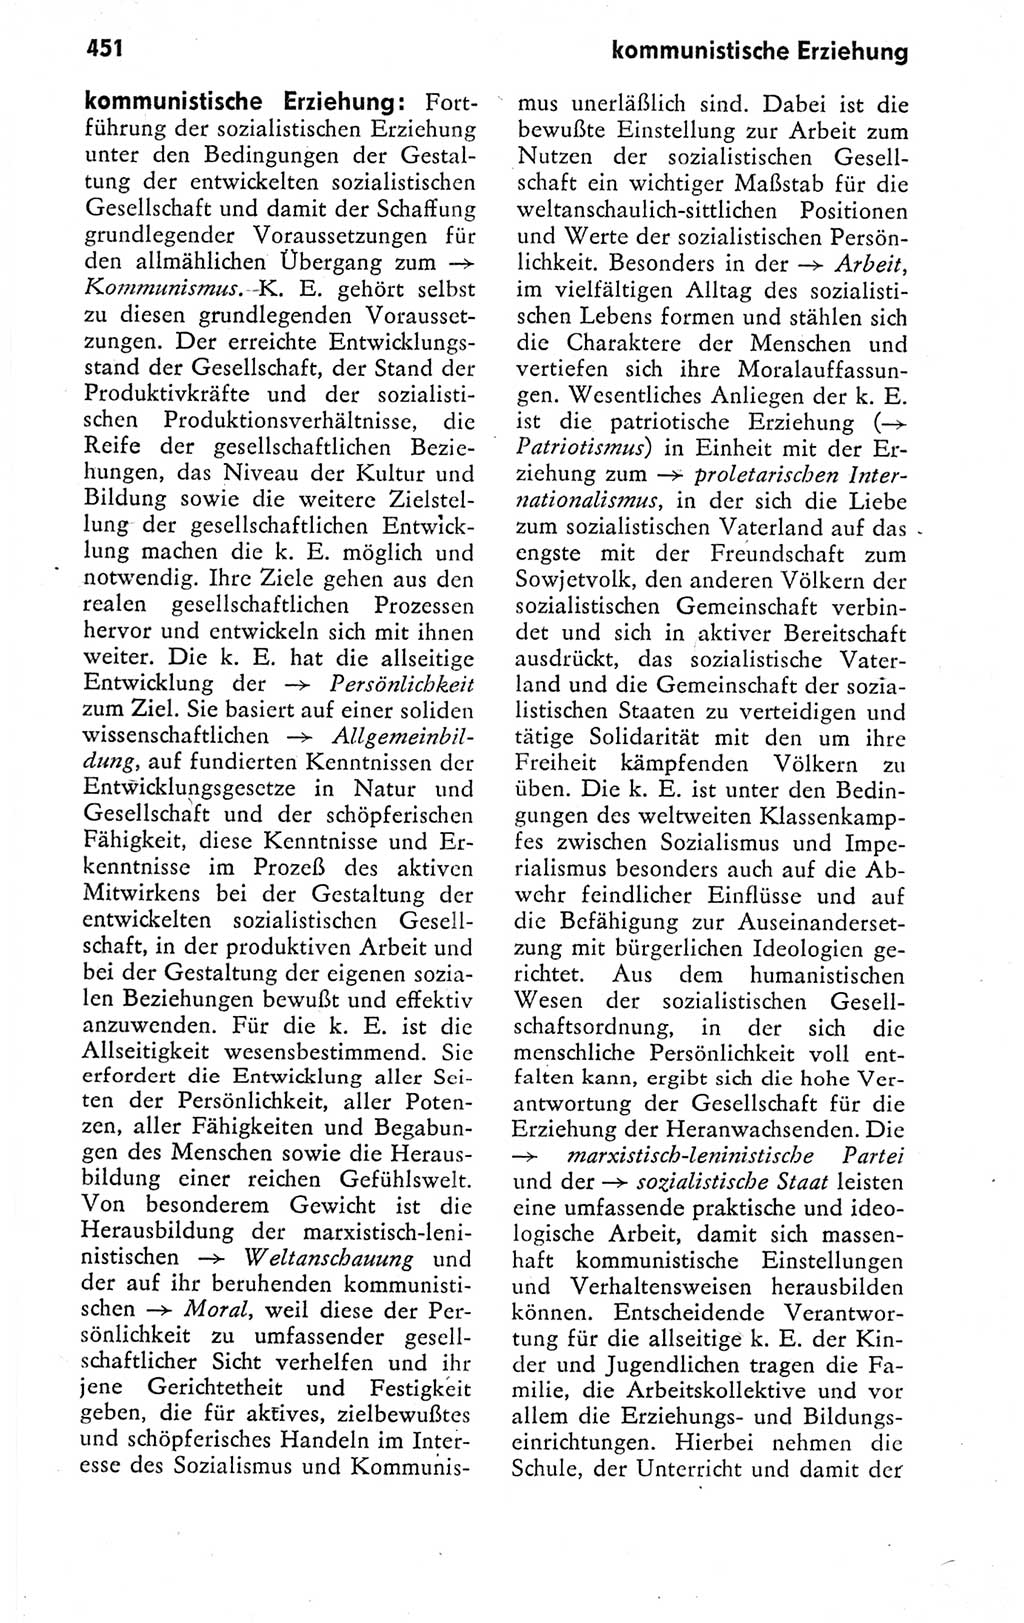 Kleines politisches Wörterbuch [Deutsche Demokratische Republik (DDR)] 1978, Seite 451 (Kl. pol. Wb. DDR 1978, S. 451)